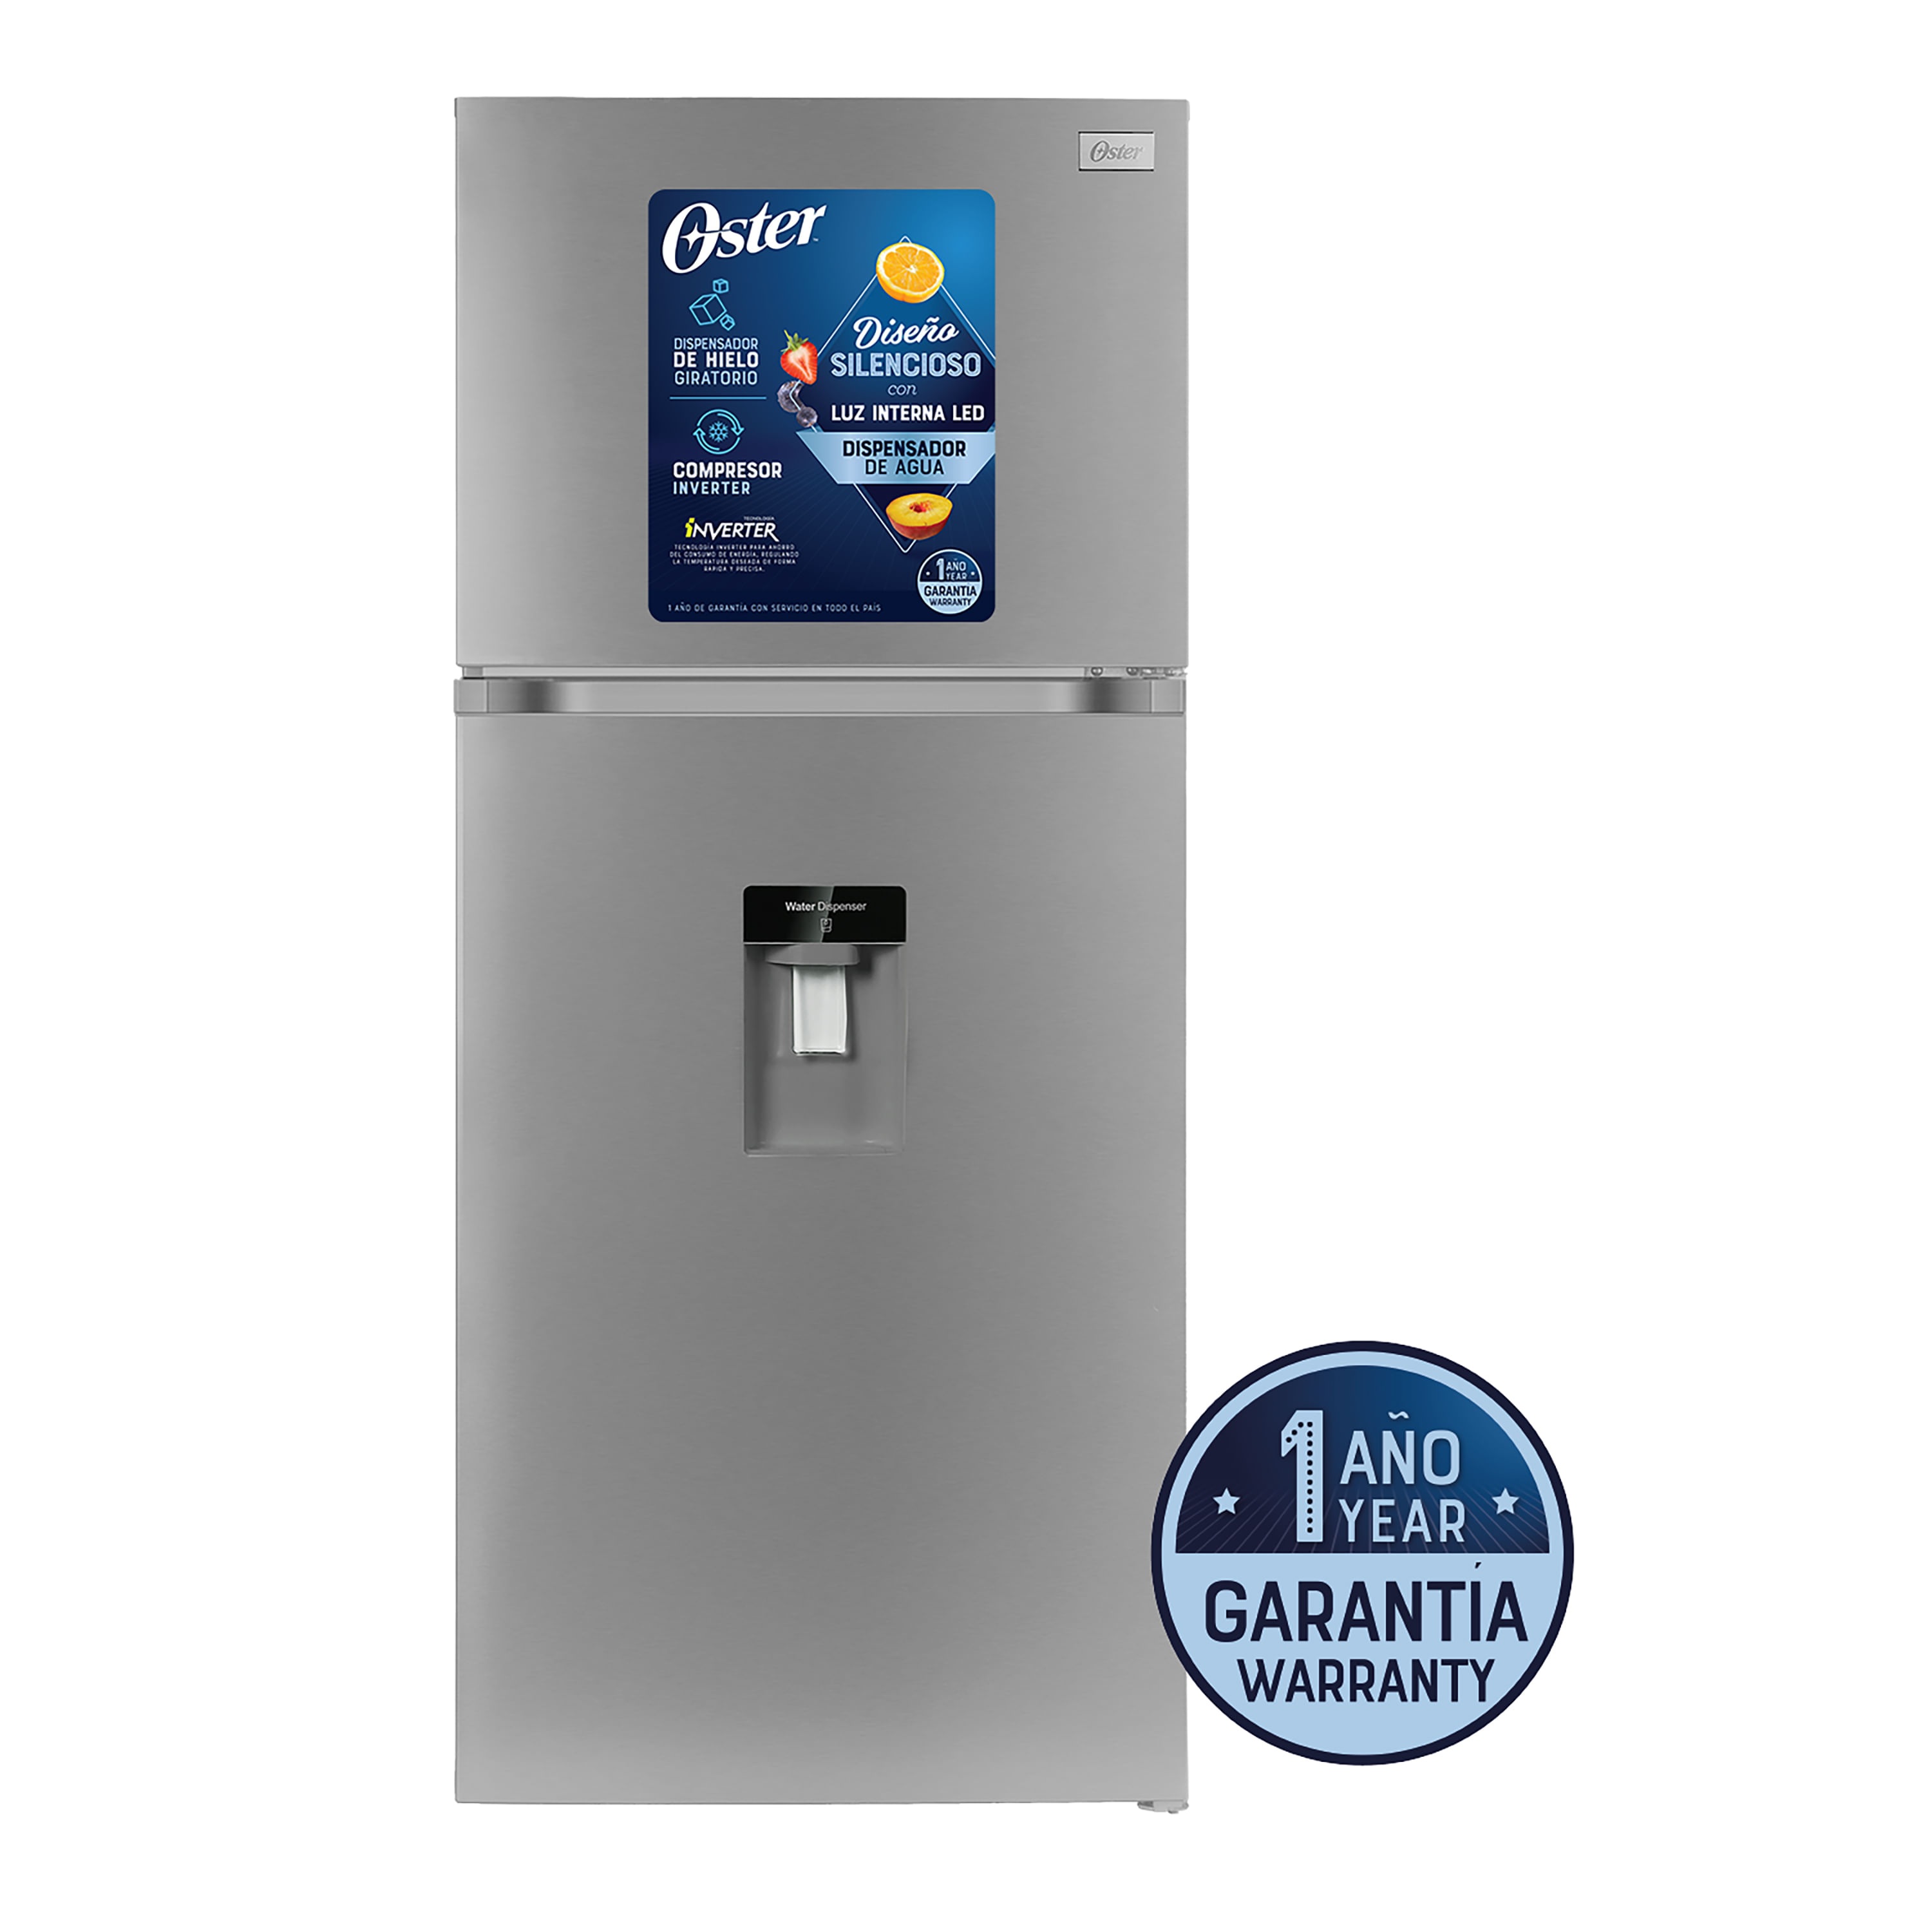 Refrigeradora-Oster-No-Frost-Dispens-14P-1-24506